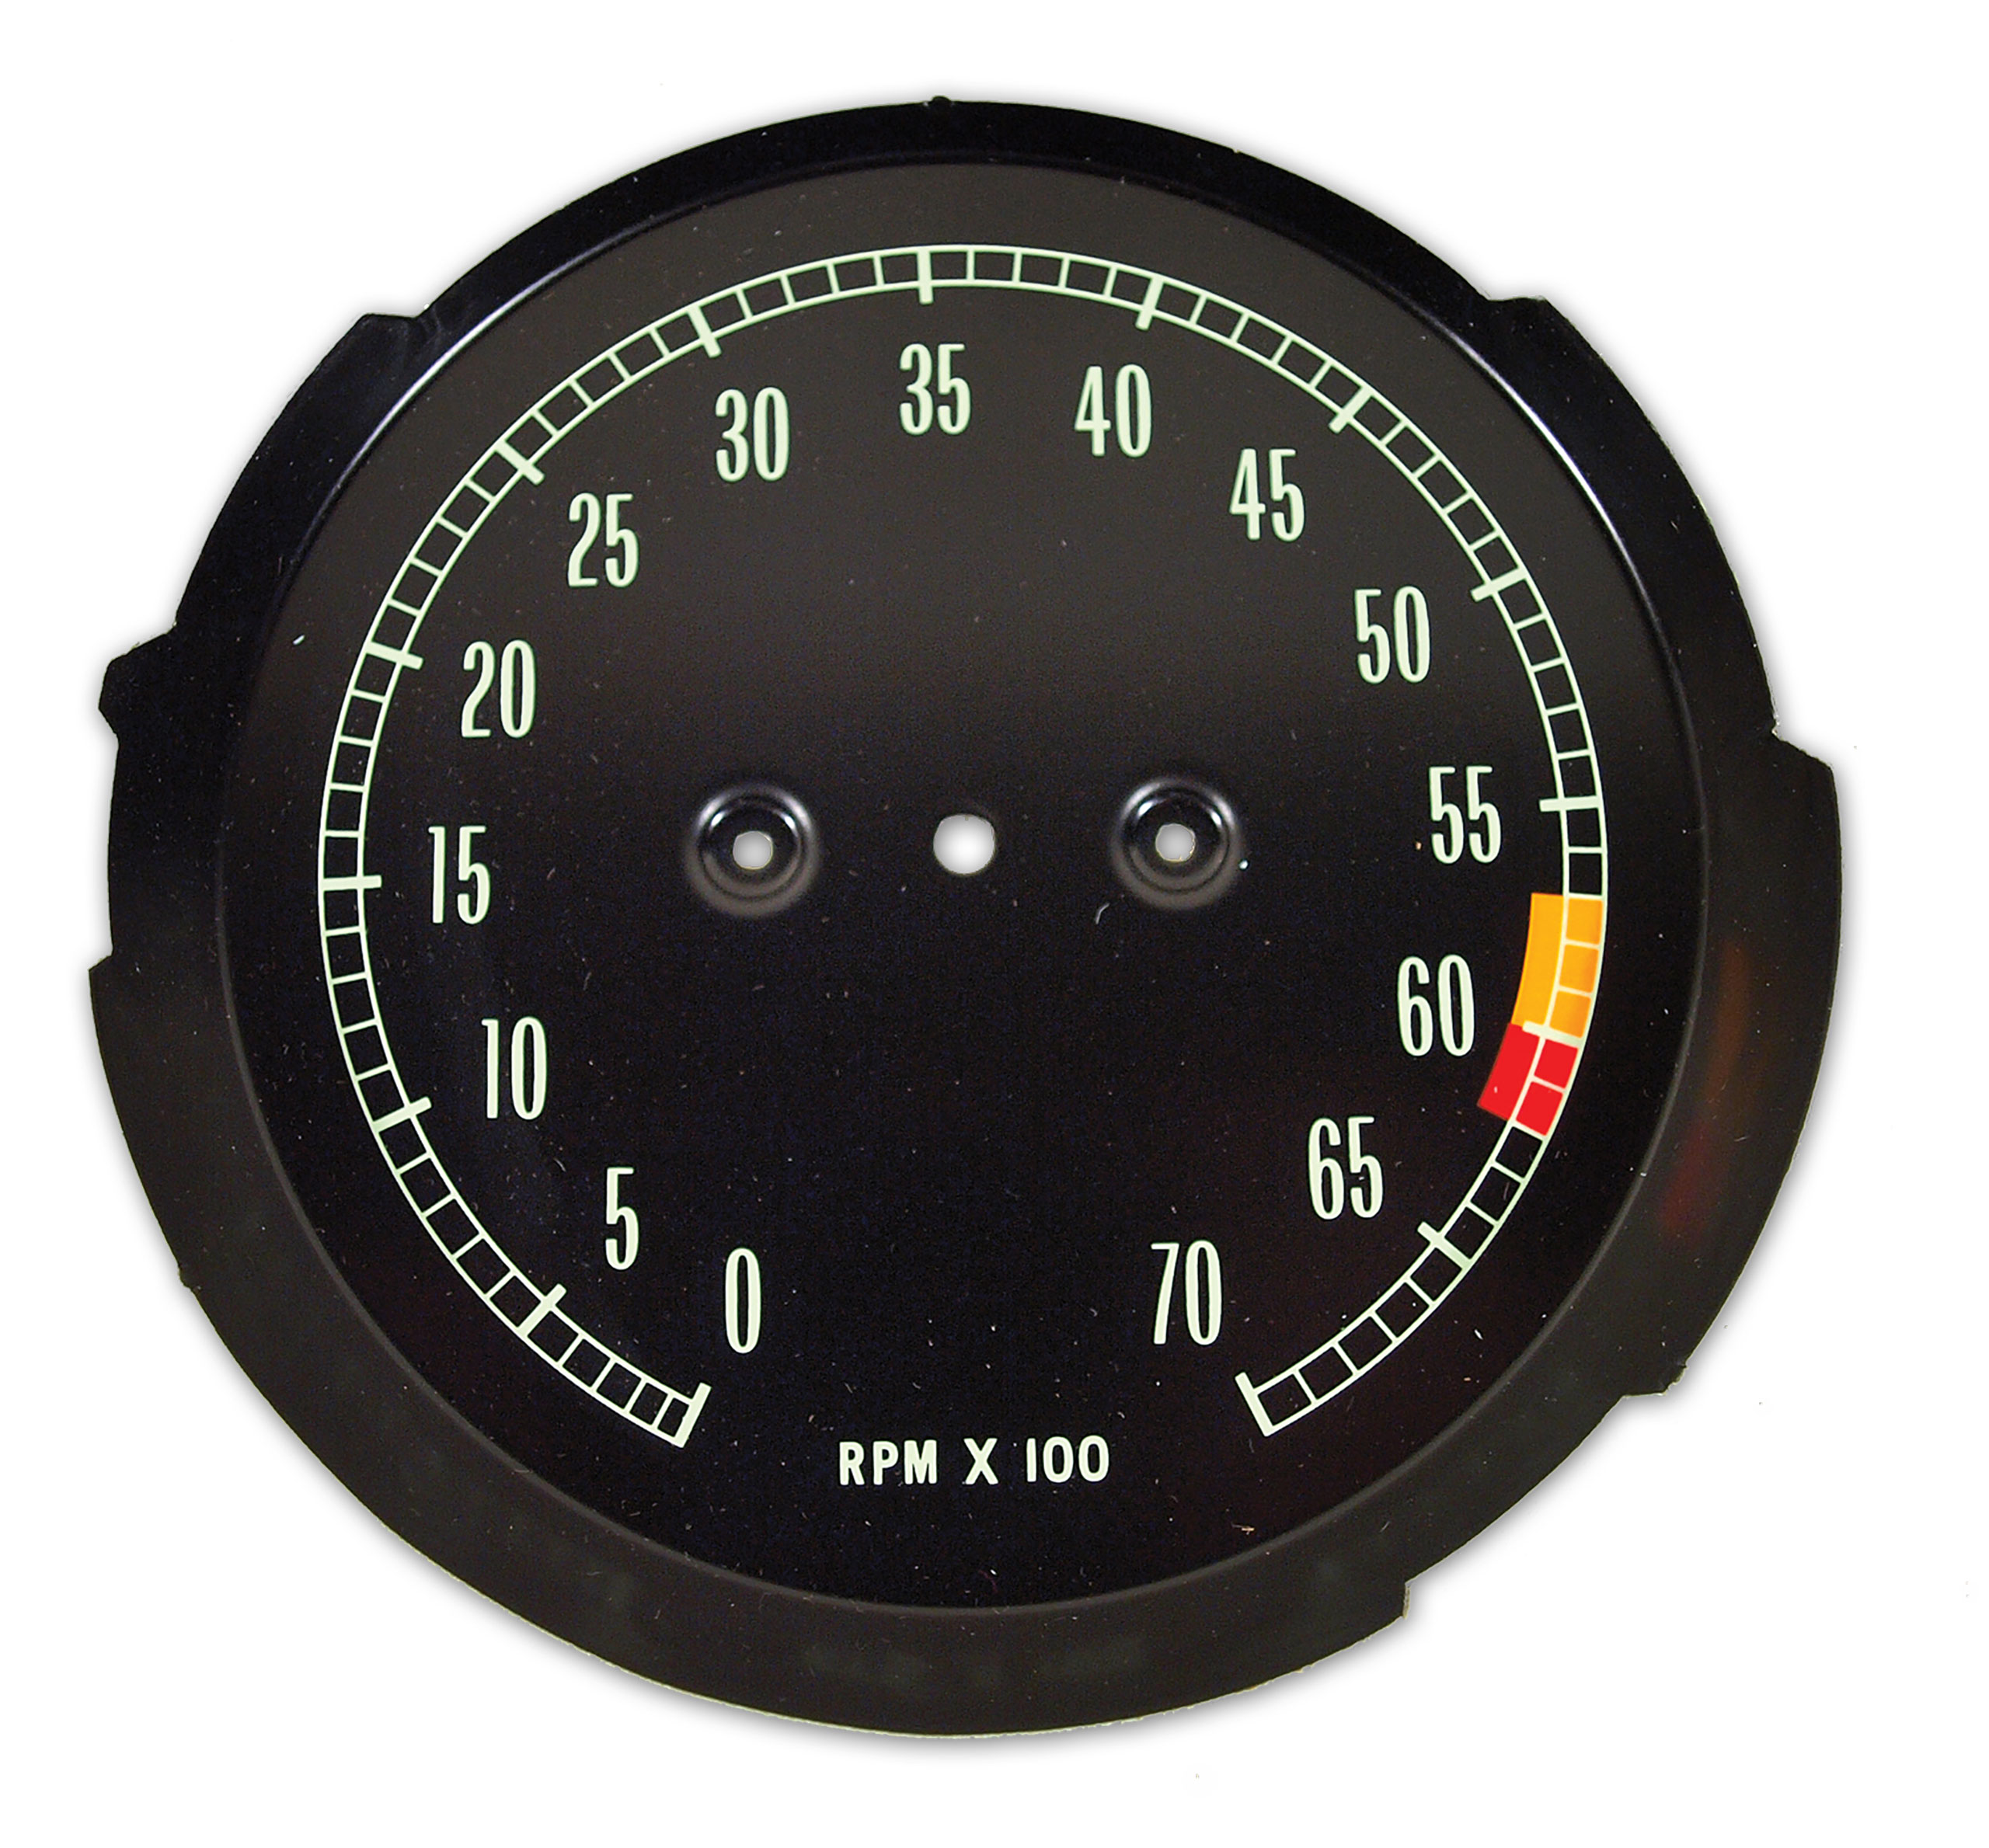 1965-1967 C2 Corvette Tachometer Face 6000 RPM Redline